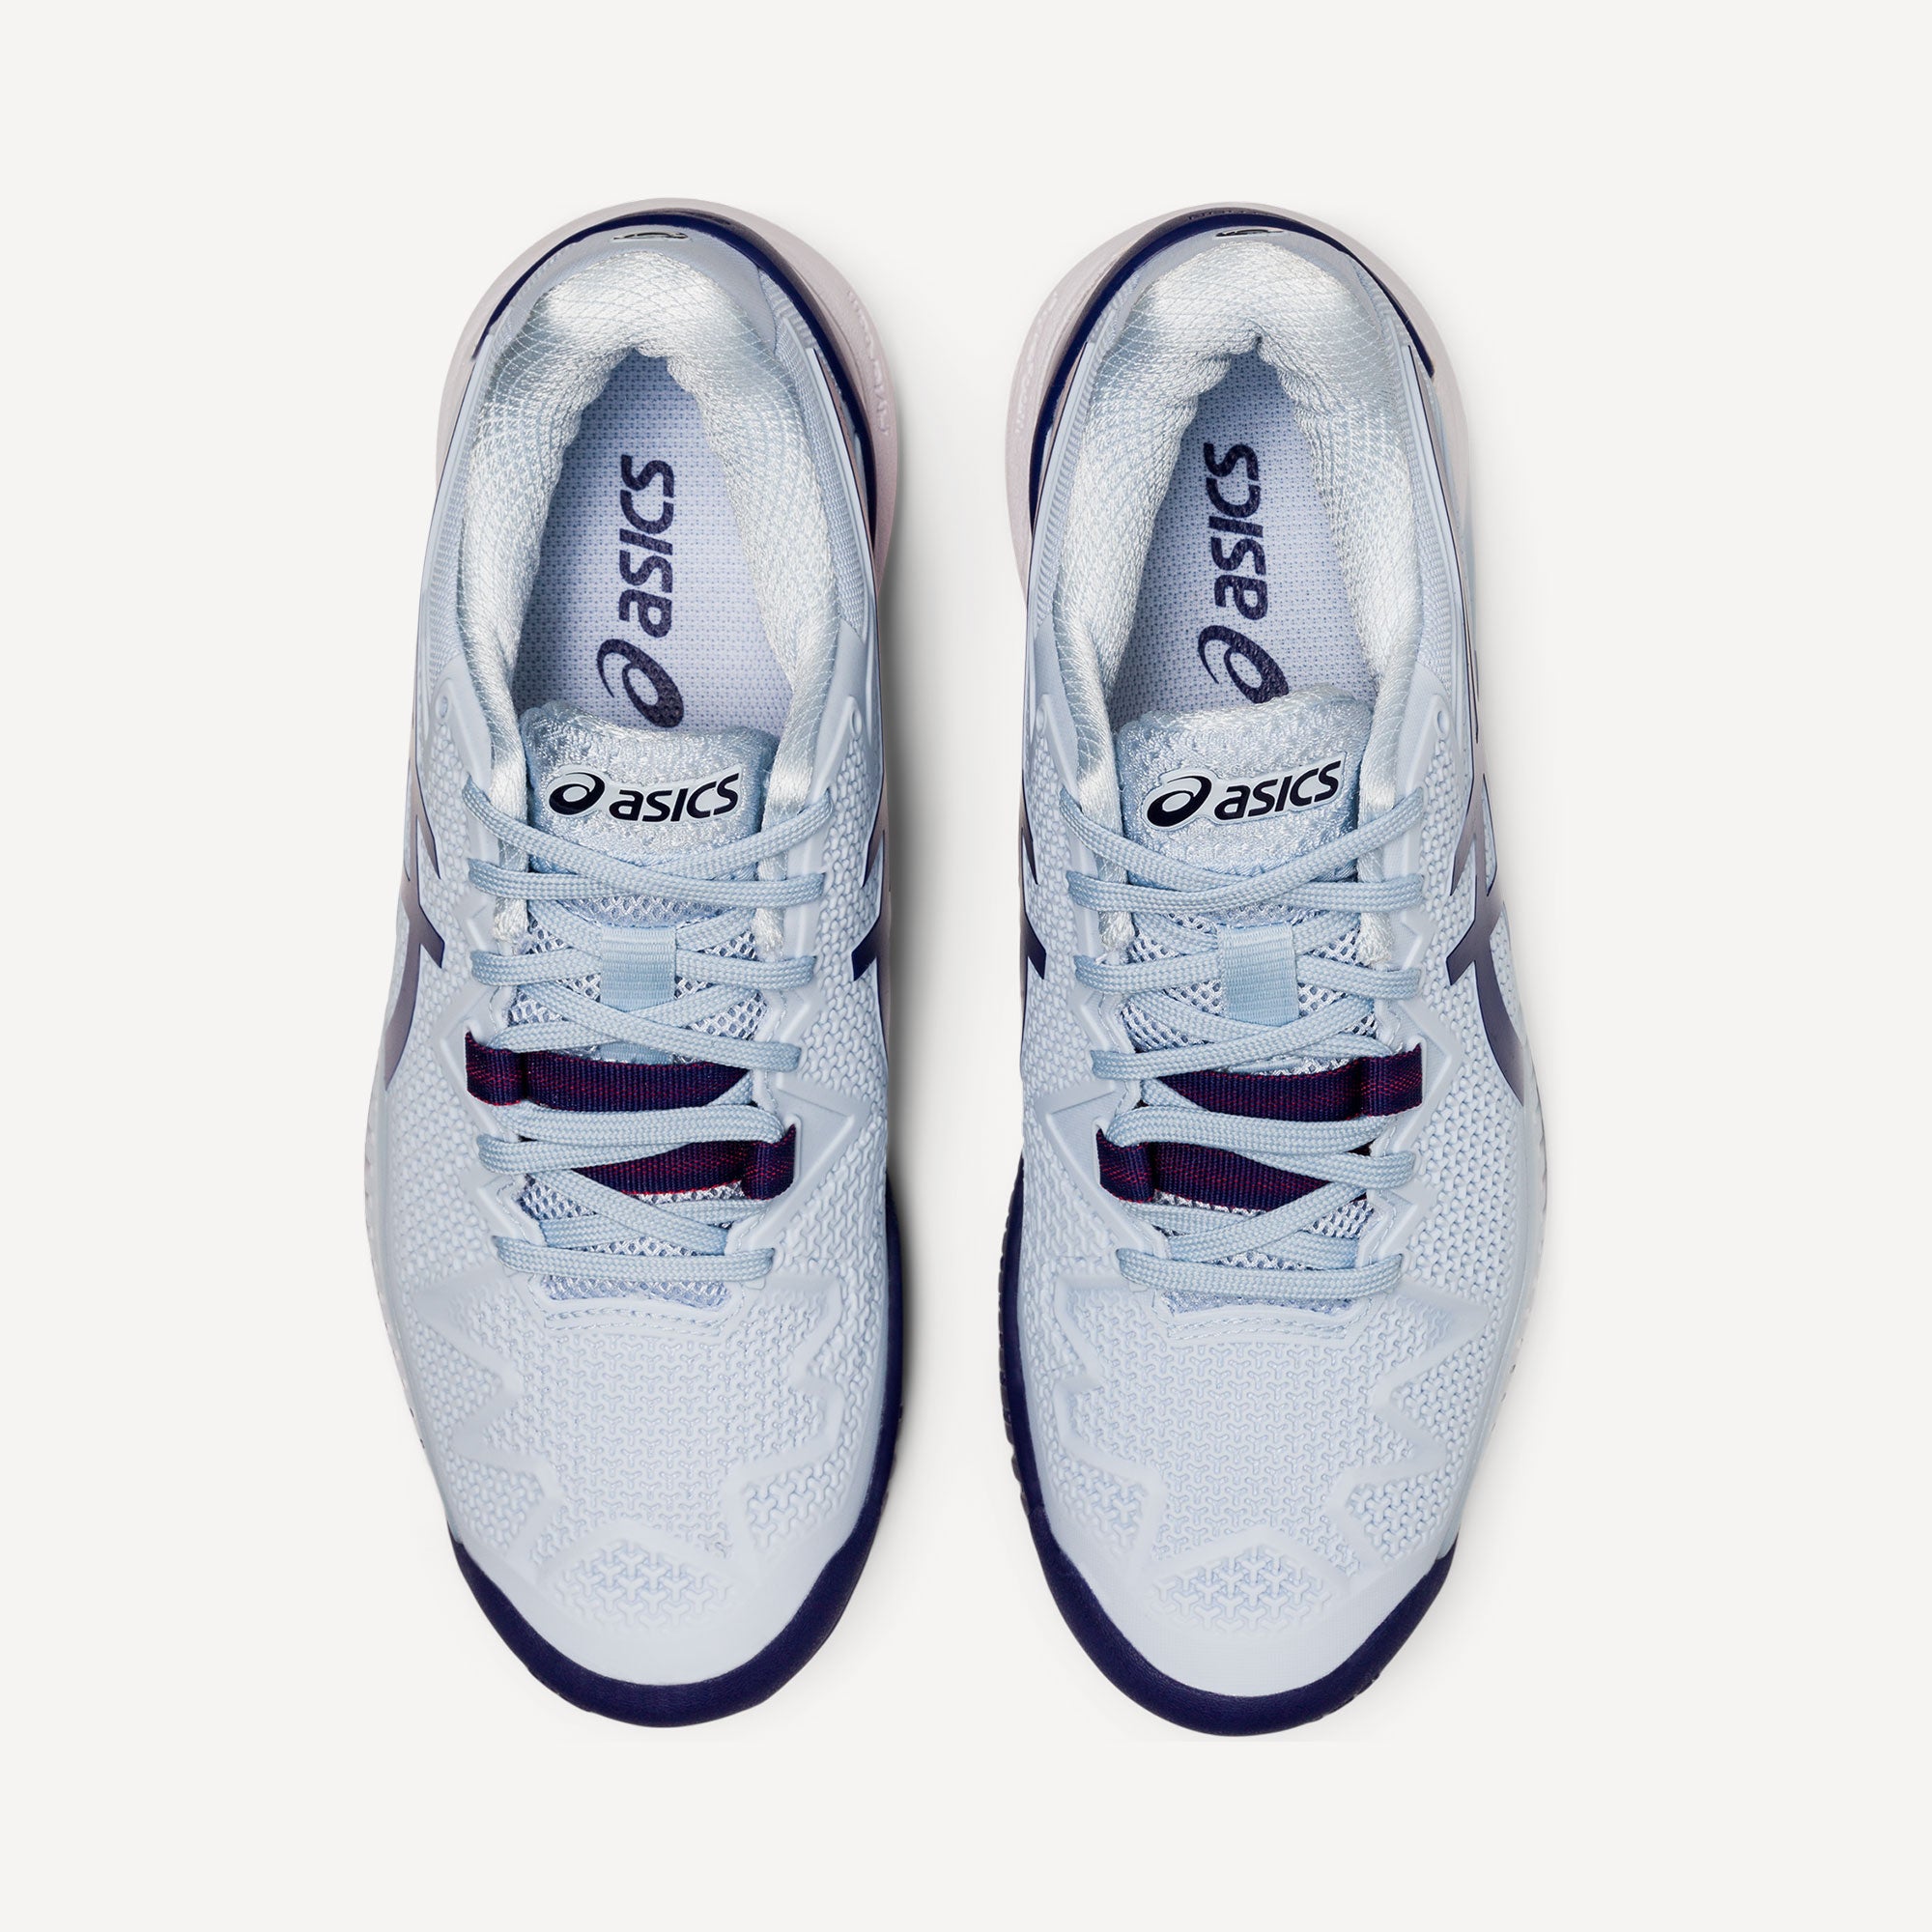 ASICS Gel-Resolution 8 Women's Hard Court Tennis Shoes Blue (7)